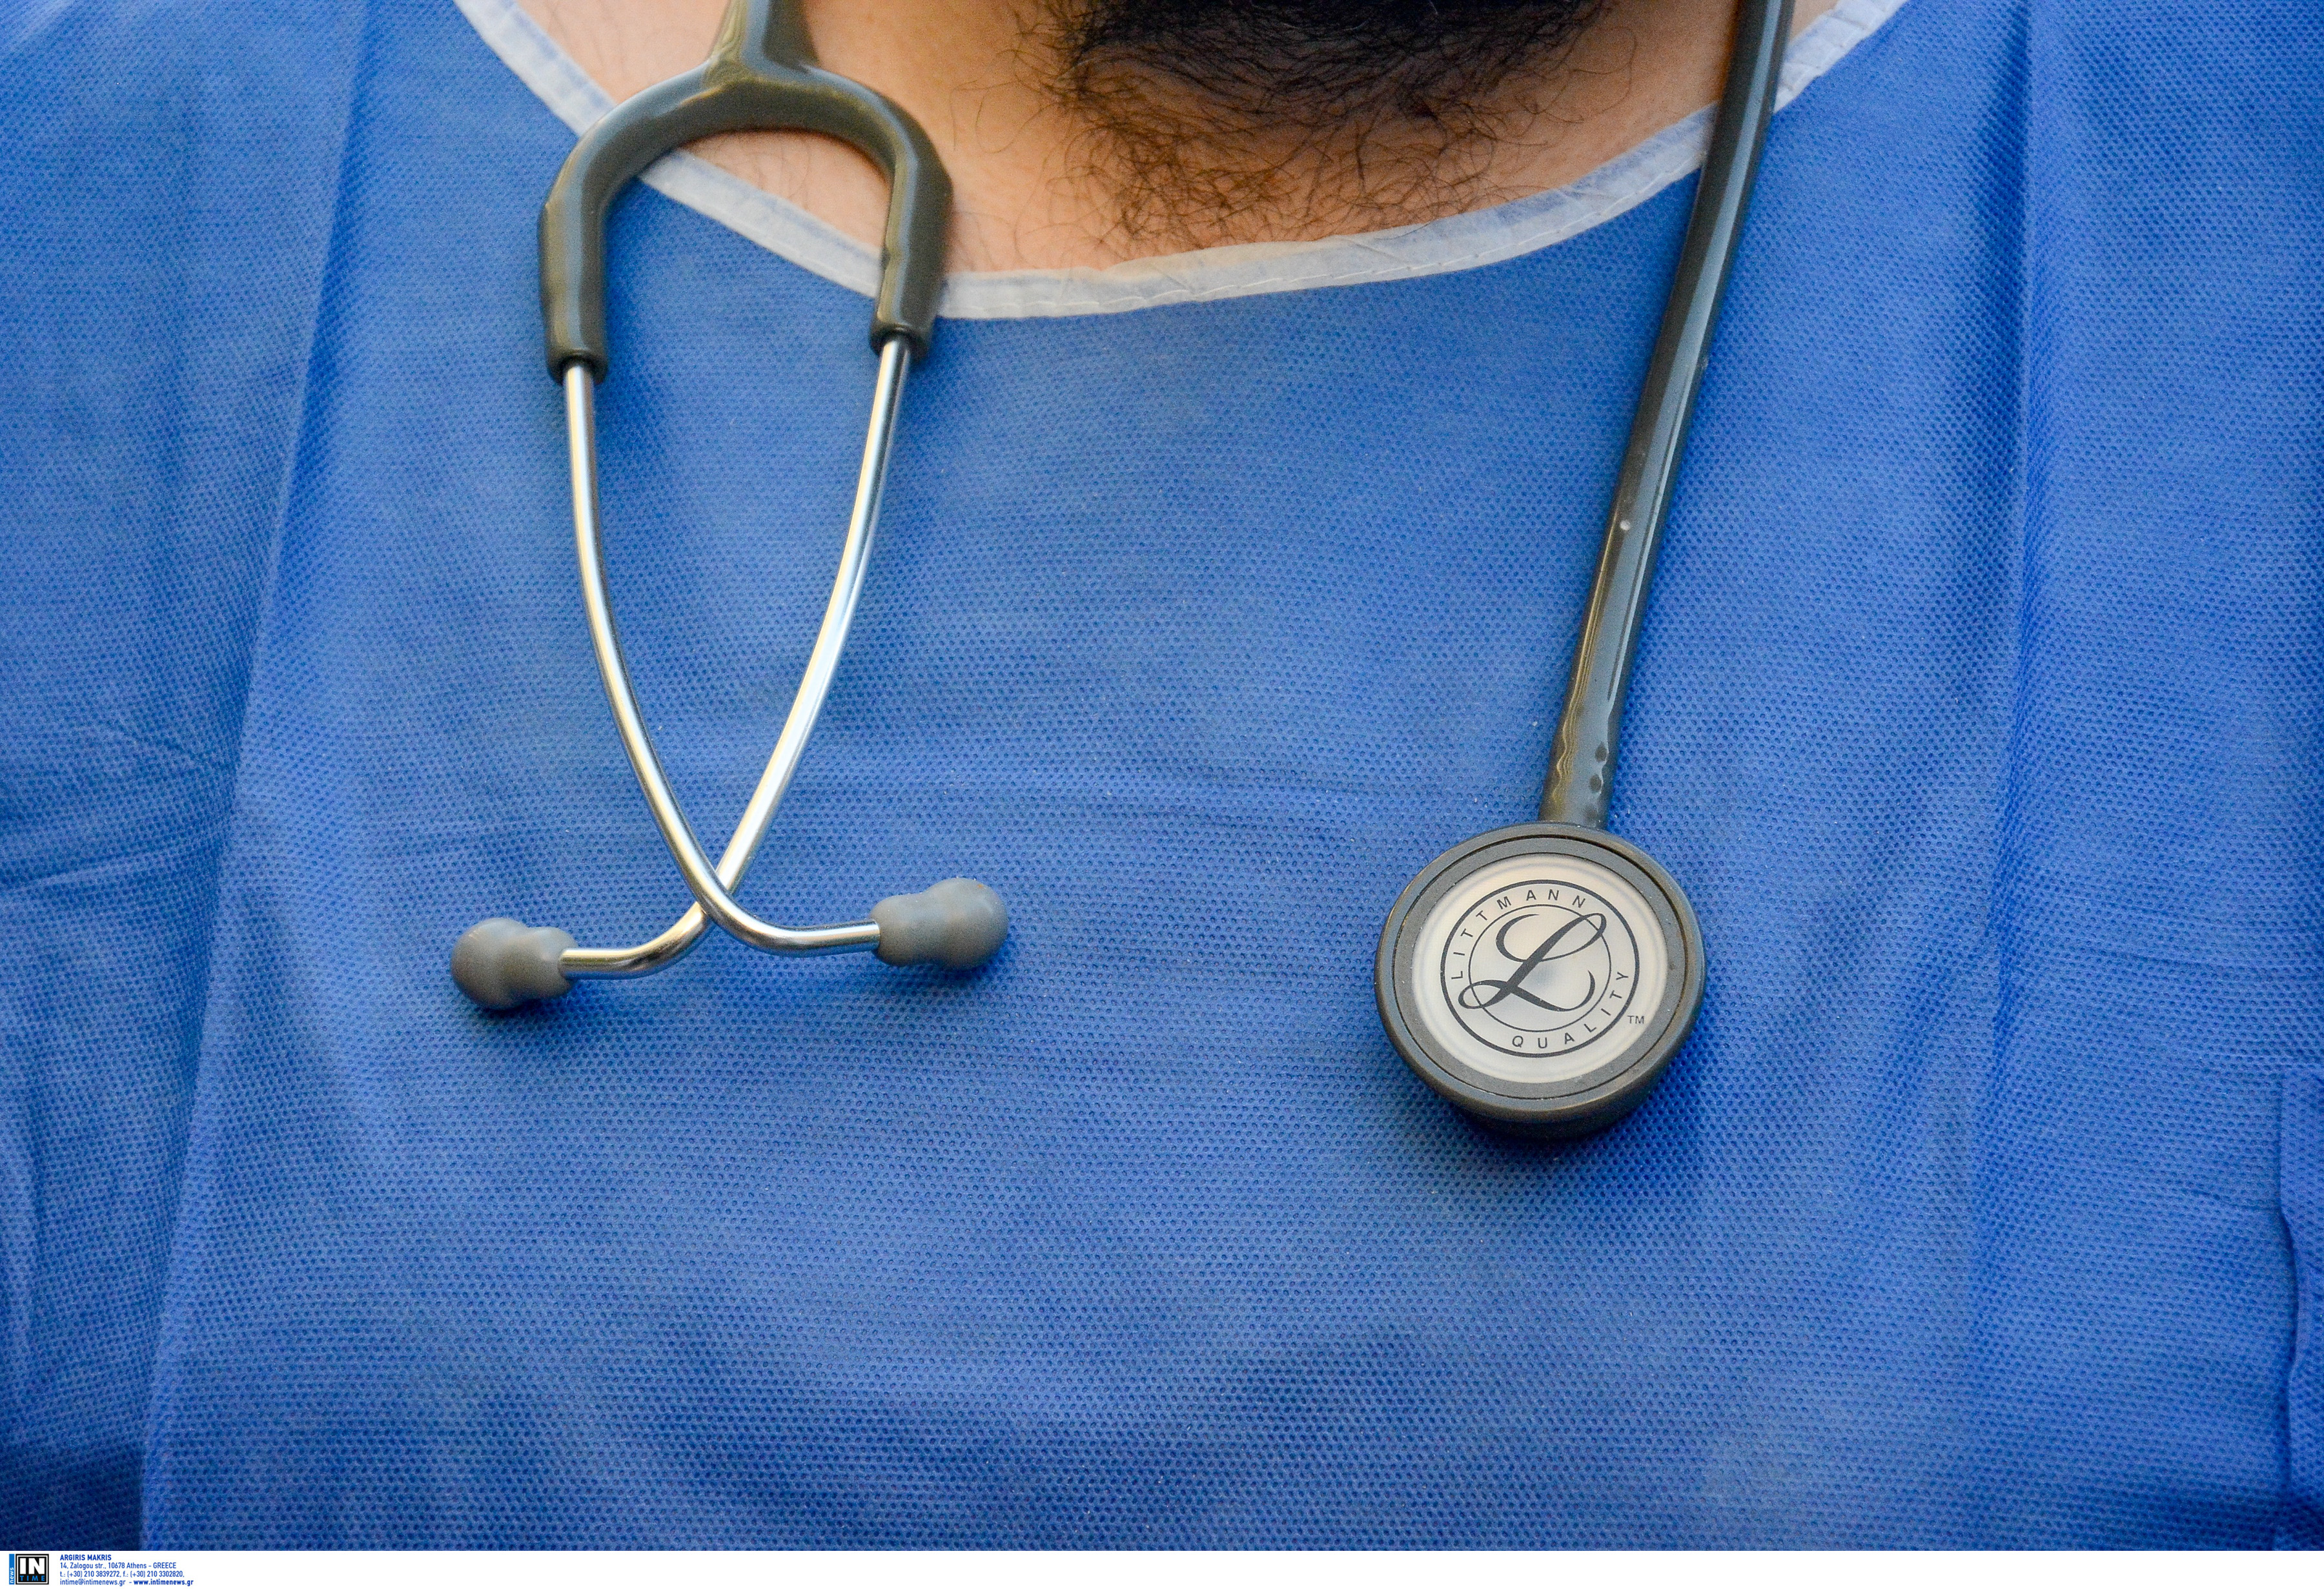 Στοιχεία σοκ! Ένας στους δέκα νοσηλευόμενους στην Ελλάδα πλήττεται από νοσοκομειακές λοιμώξεις